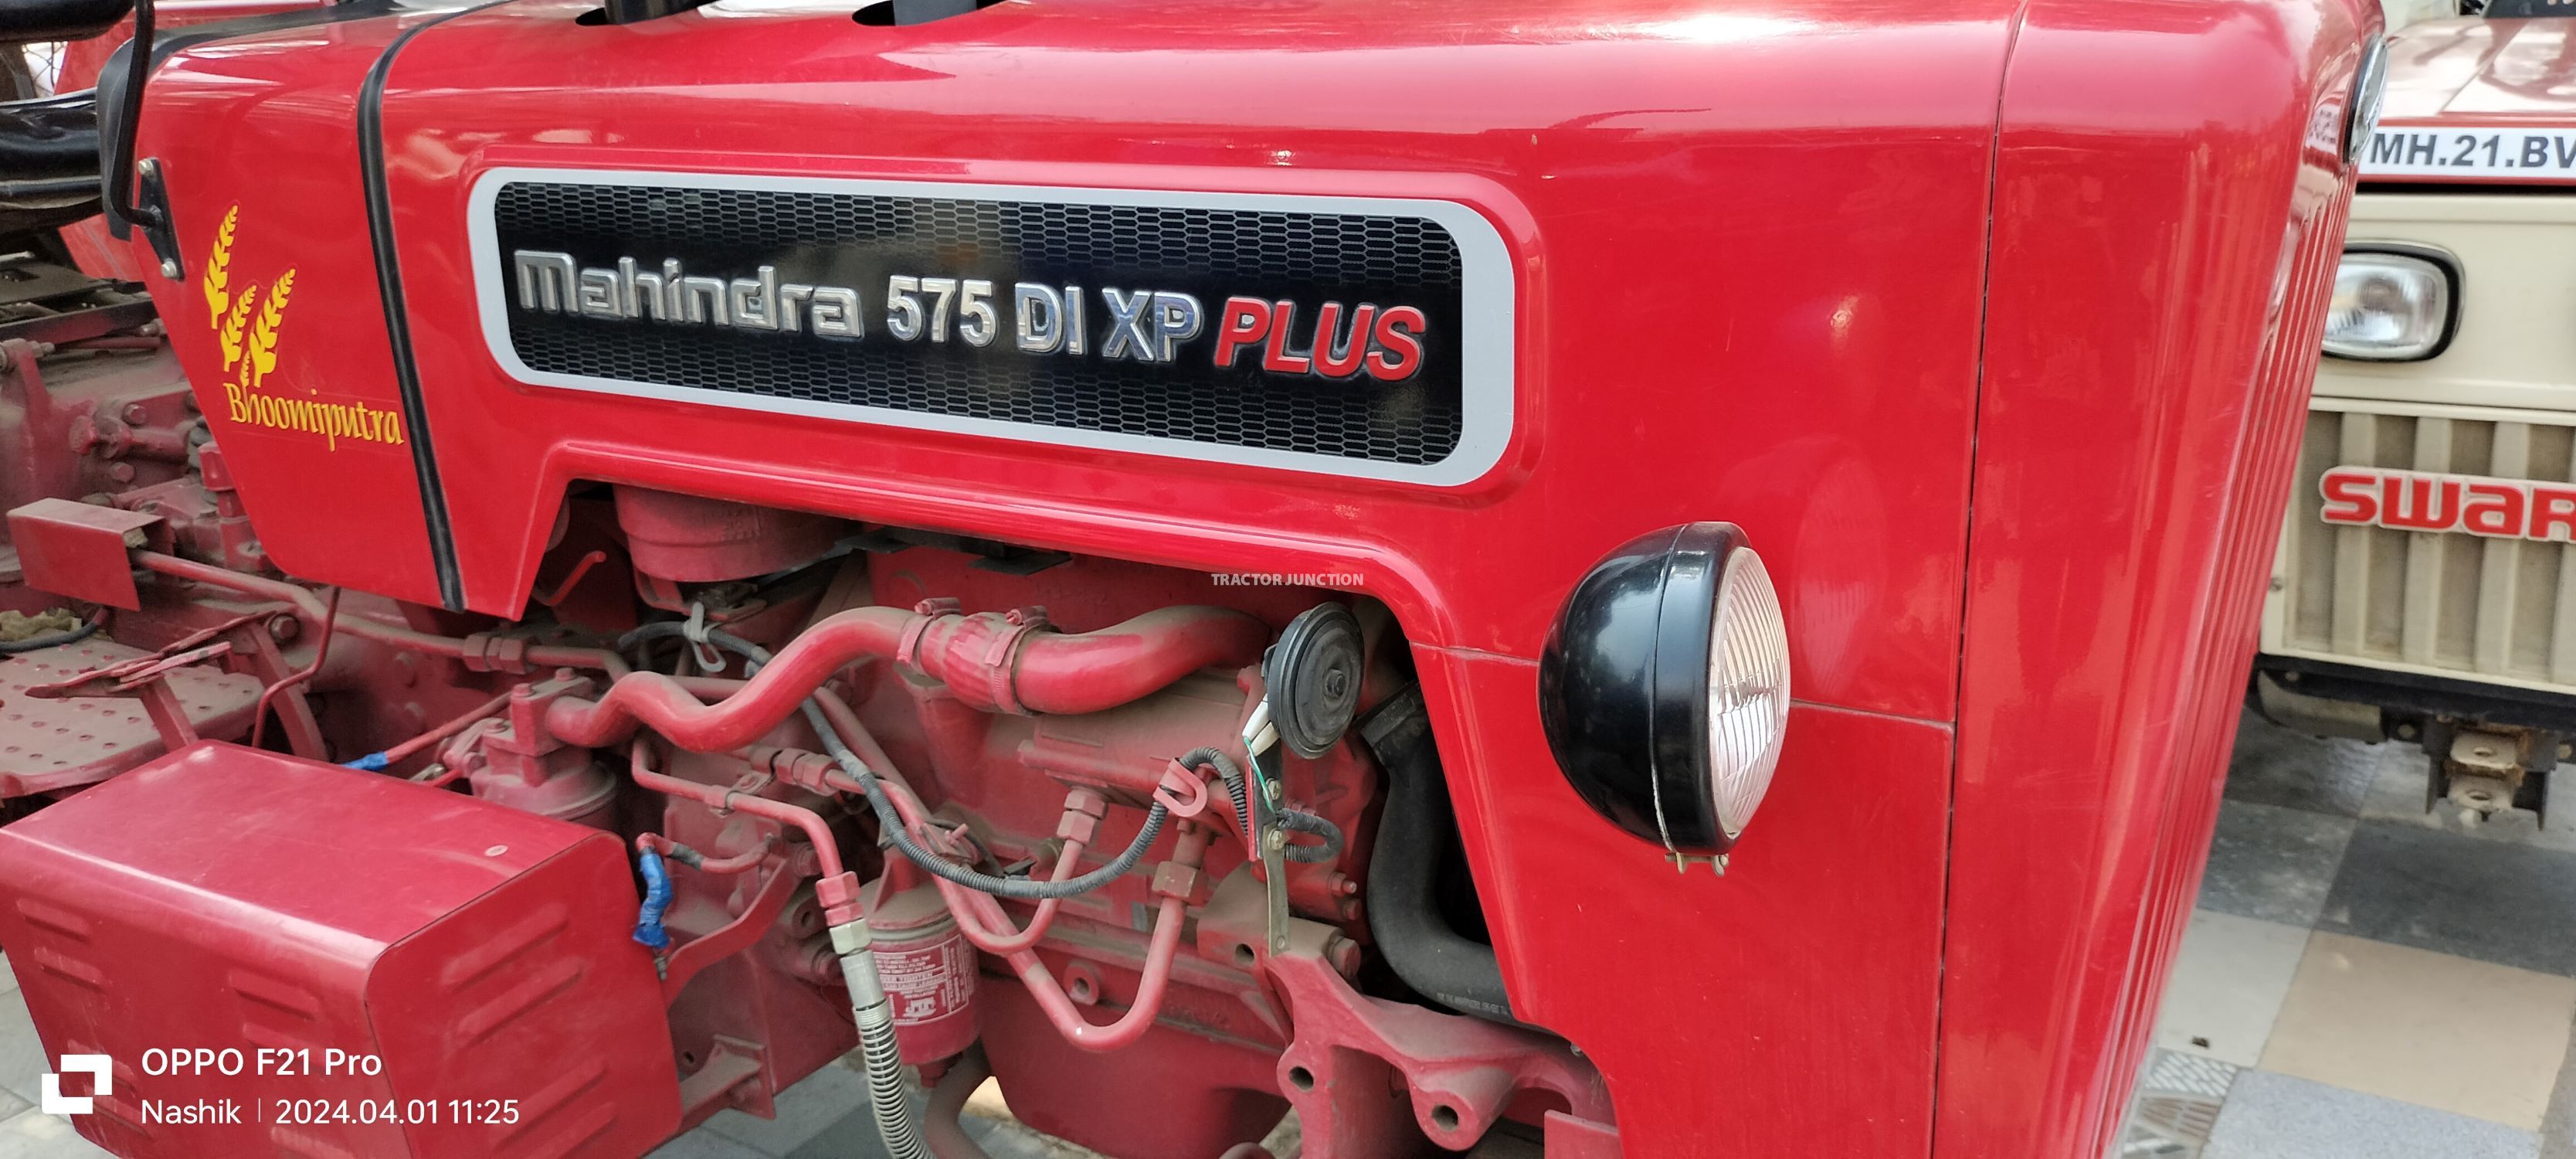 Mahindra 575 DI XP Plus